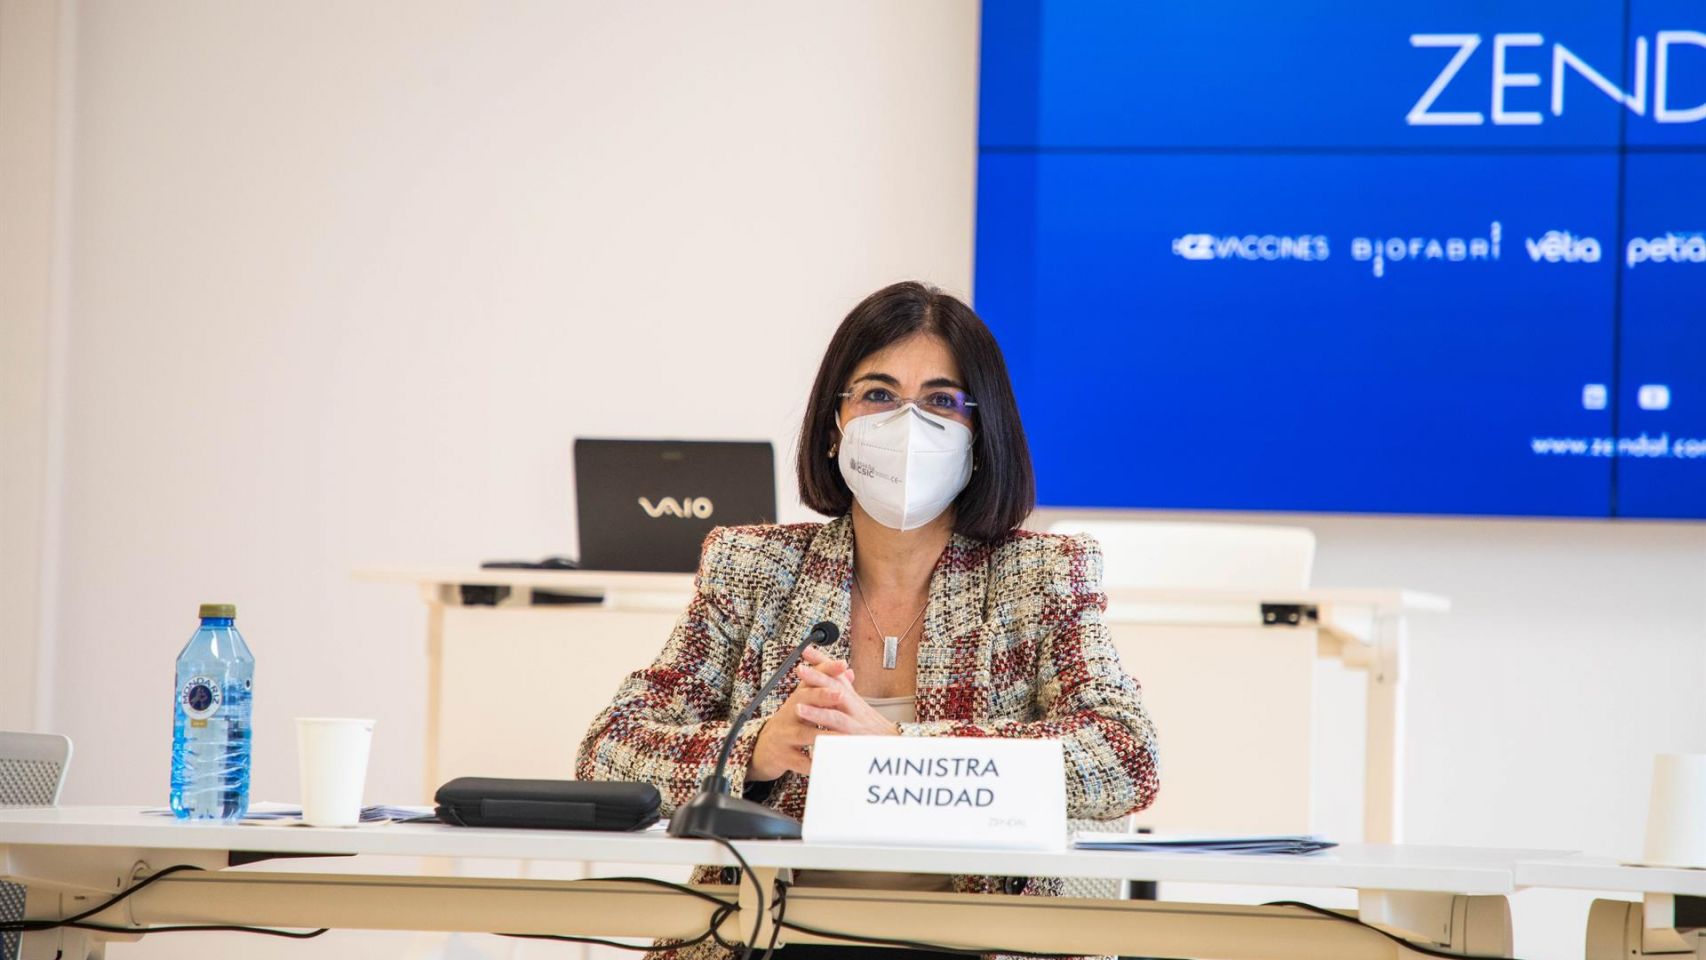 La ministra de Sanidad, Carolina Darias, comparece ante los medios durante una visita a la planta de Biofabri.